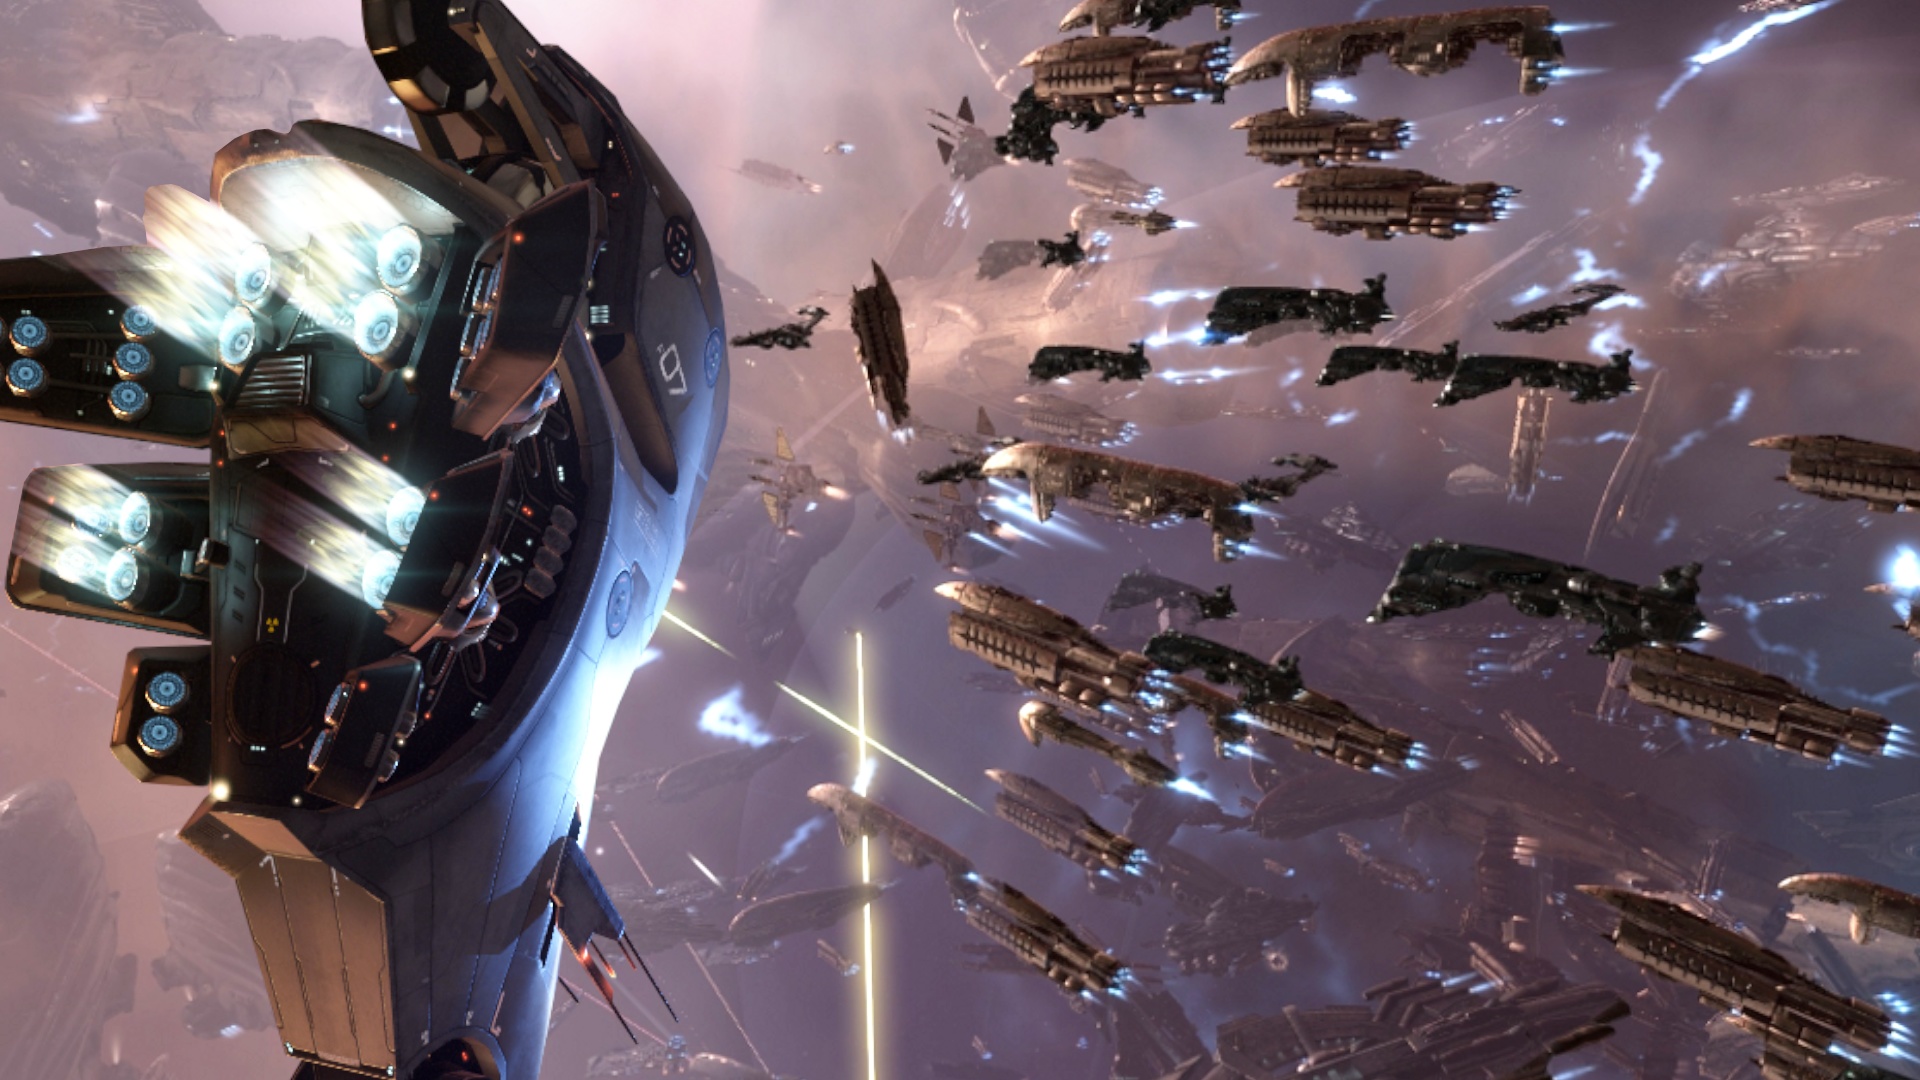 #Monströse Raumschiffschlacht: 3.500 Spieler bekriegen sich, weil sie nichts besseres zu tun haben